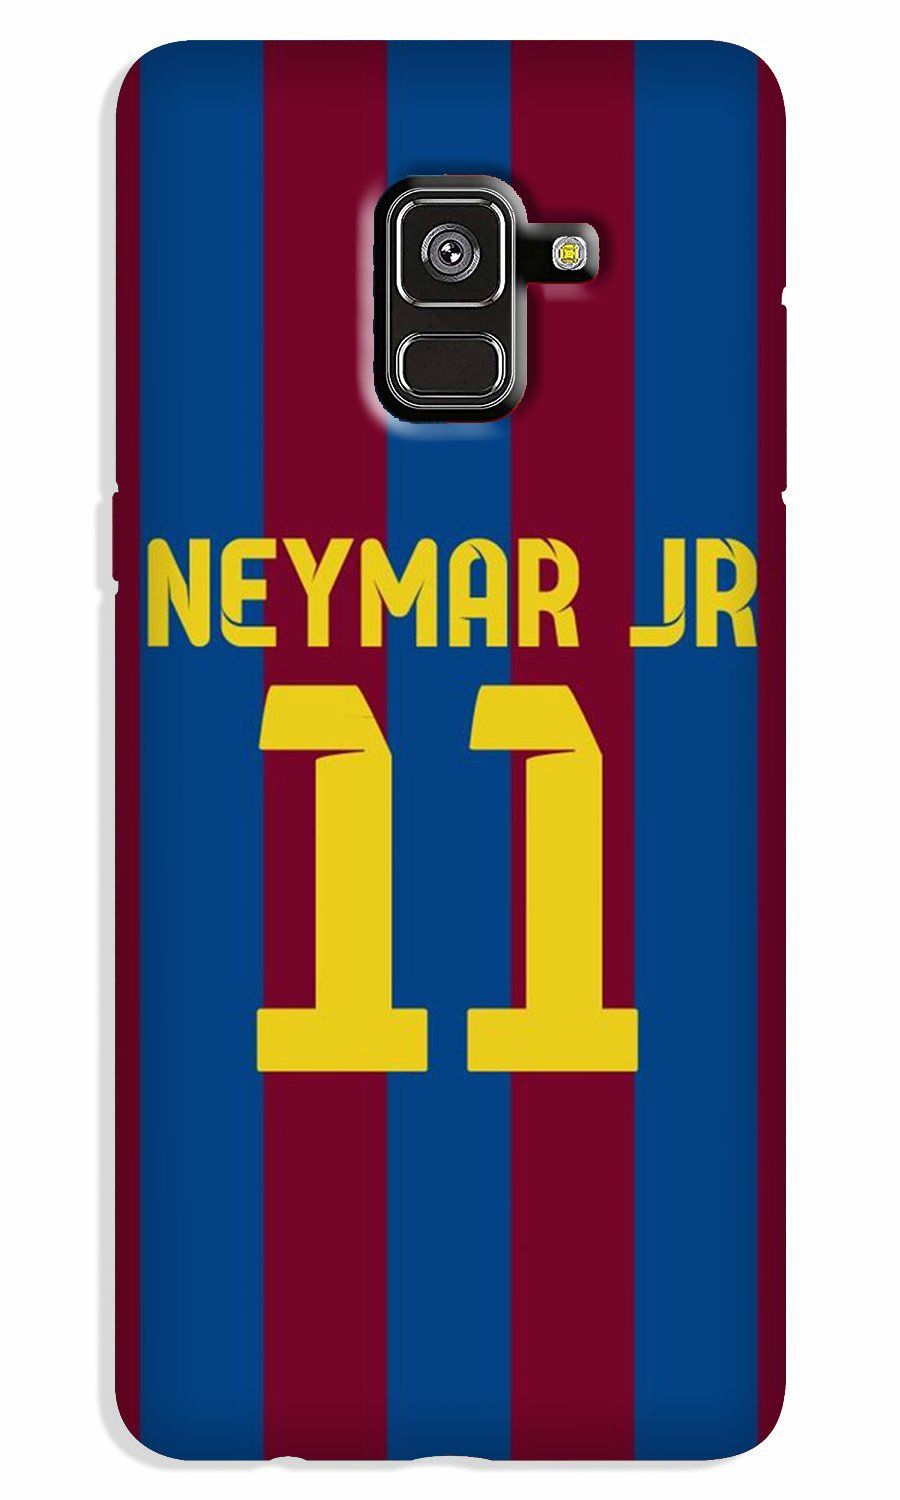 Neymar Jr Case for Galaxy A8 Plus  (Design - 162)